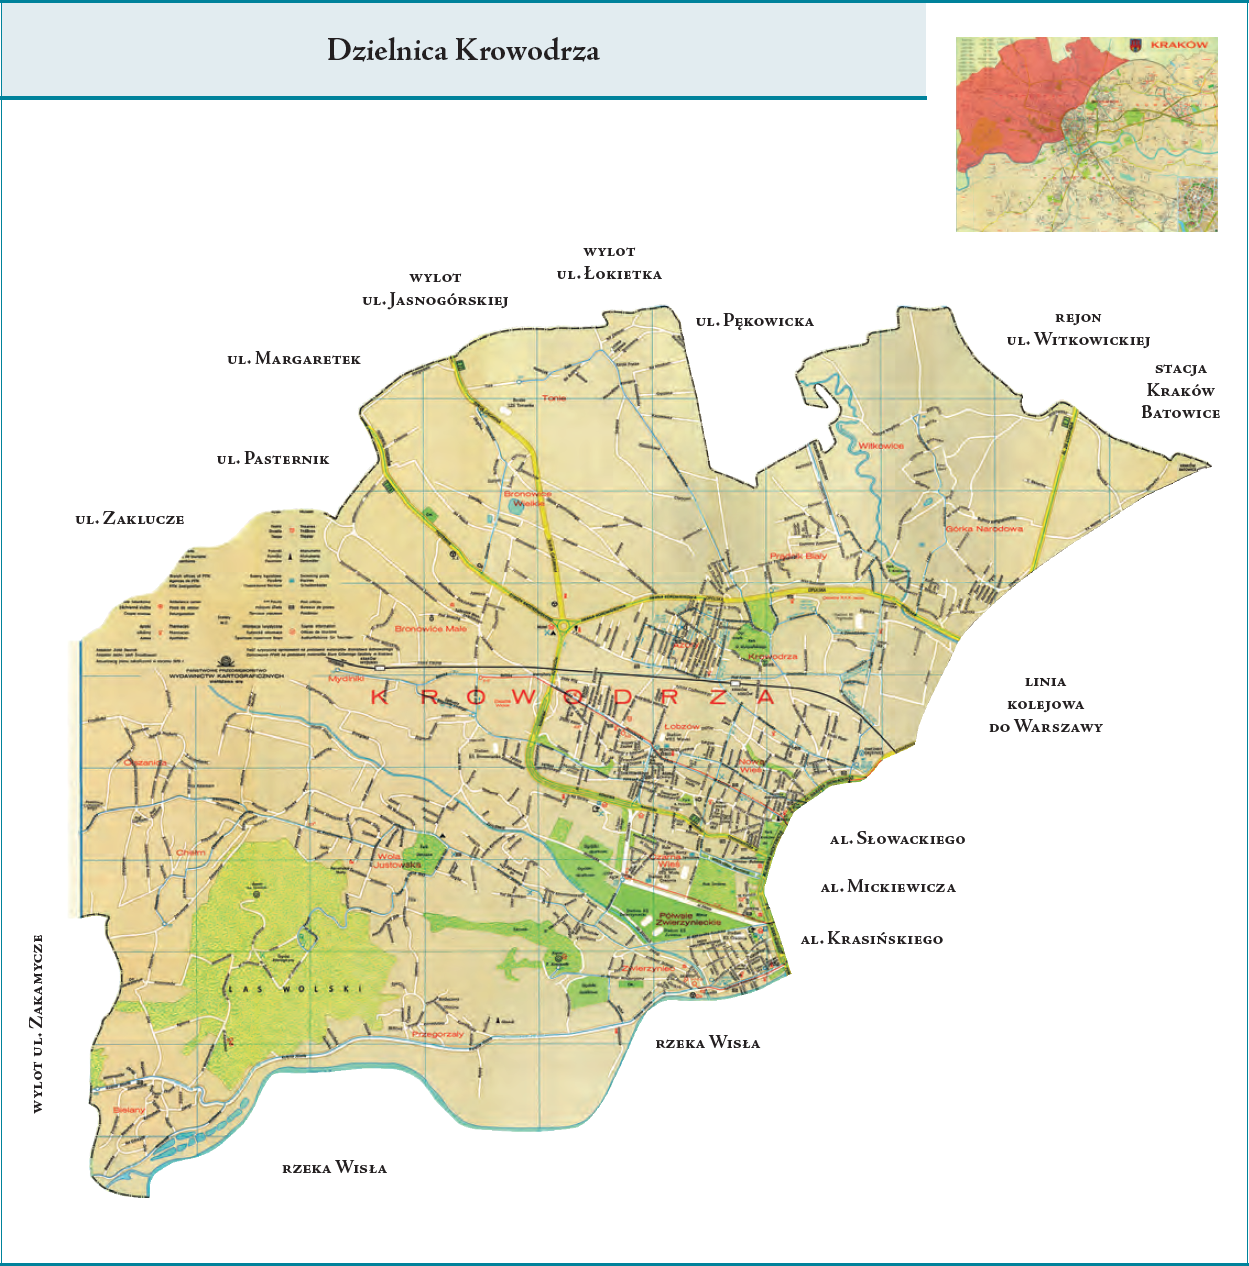 Dzielnica (1973-1991) – Krowodrza